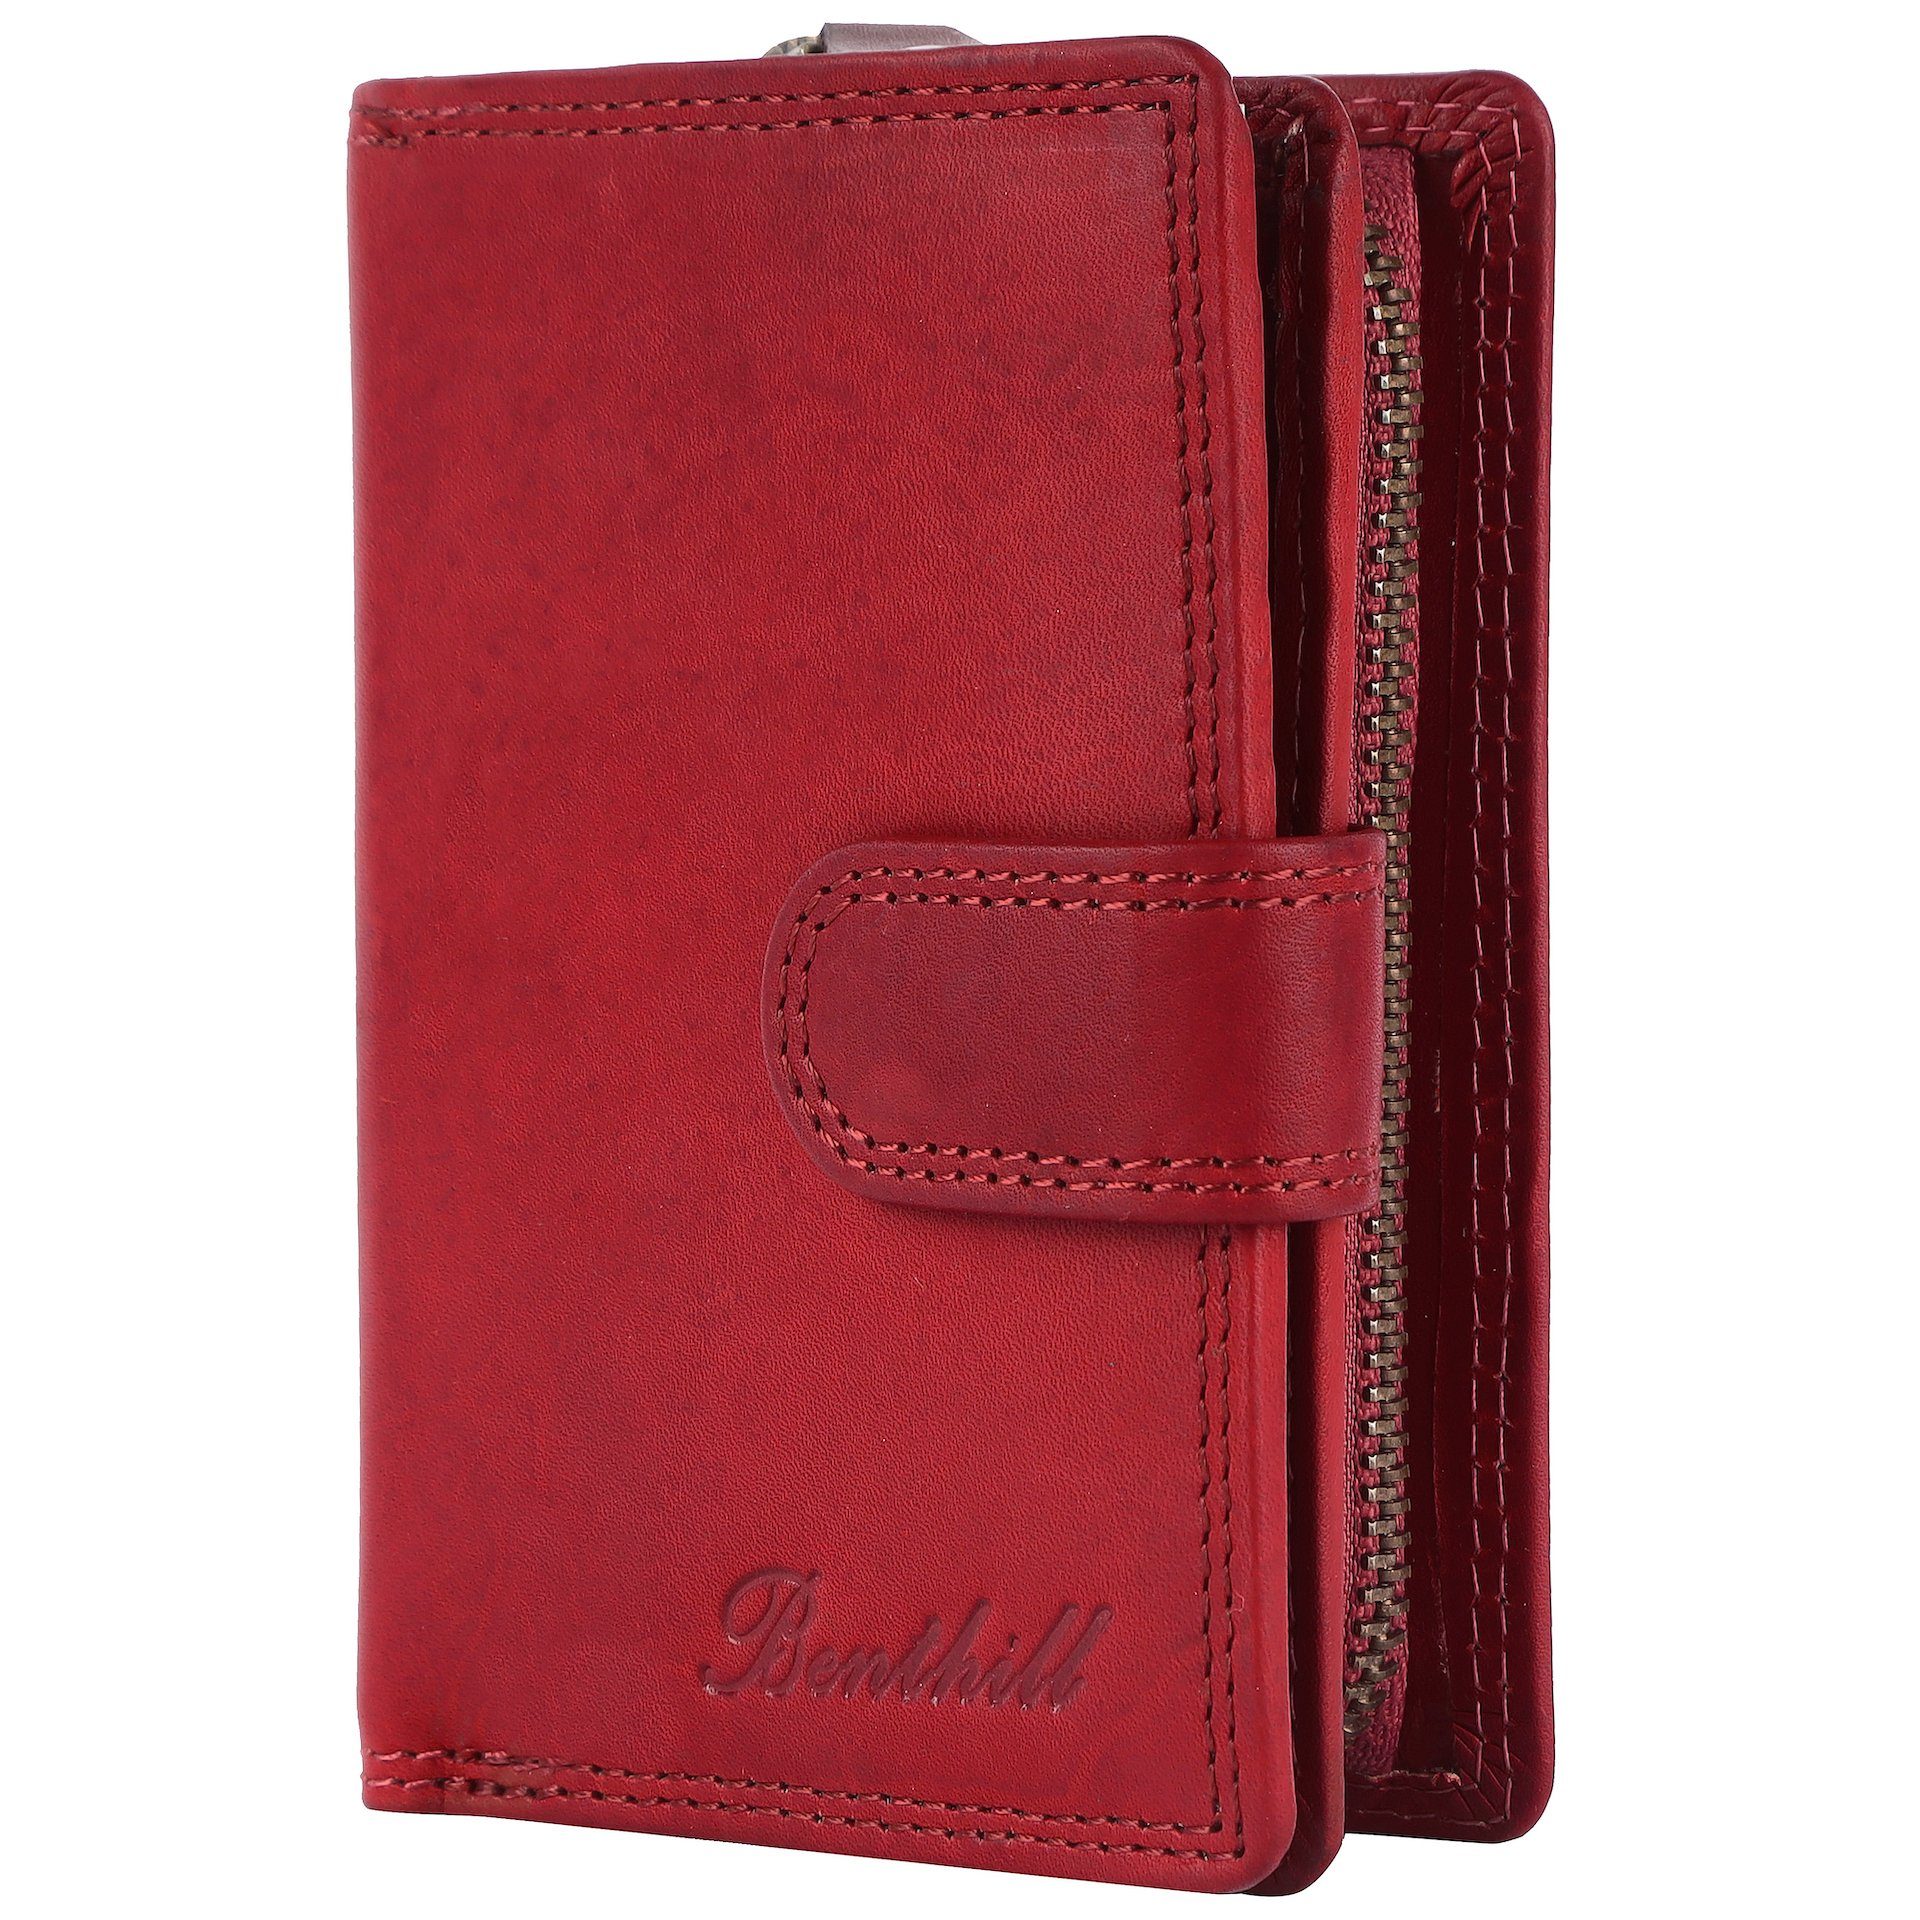 Benthill Geldbörse Damen Klein Echt Leder RFID Kleines Portemonnaie Vintage Kompakt, RFID-Schutz Kartenfächer Münzfach Reißverschlussfach Rot